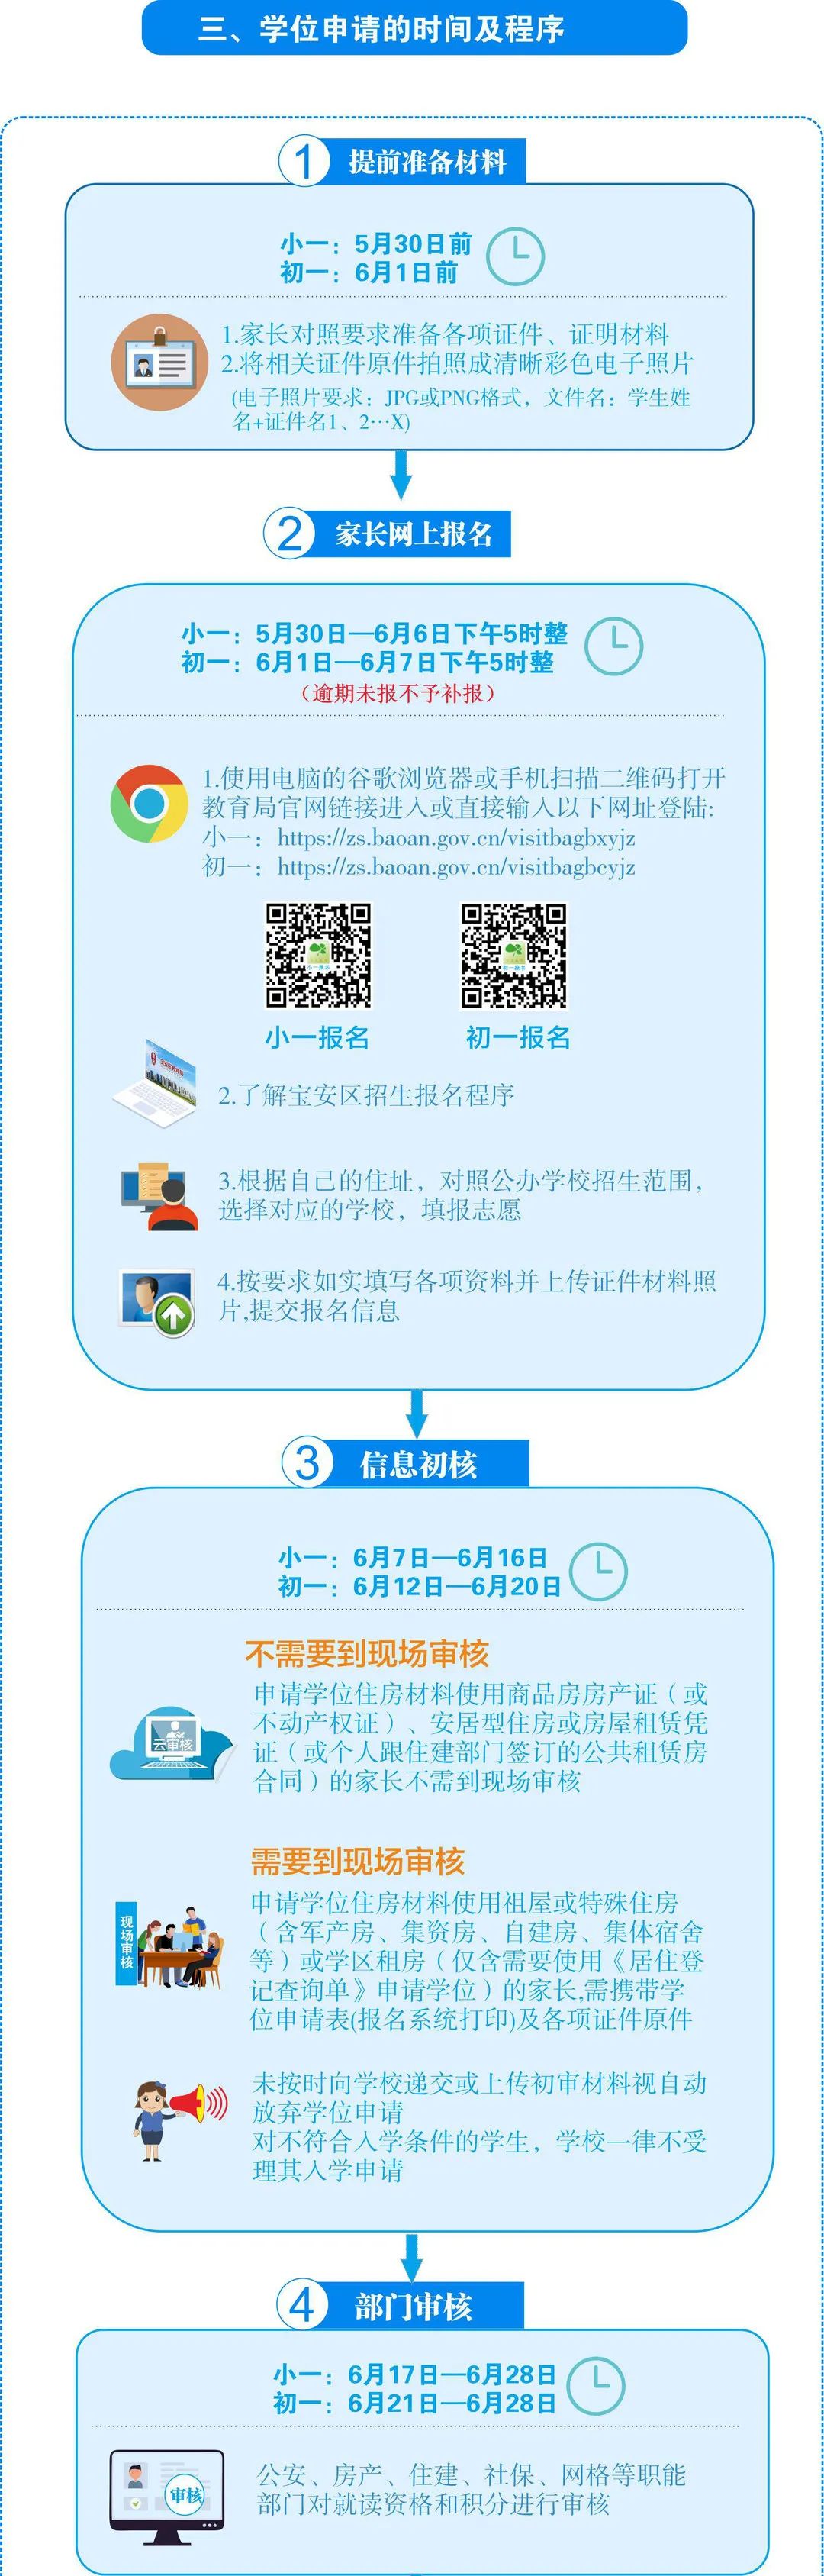 深圳宝安区2022年初一学位申请指南